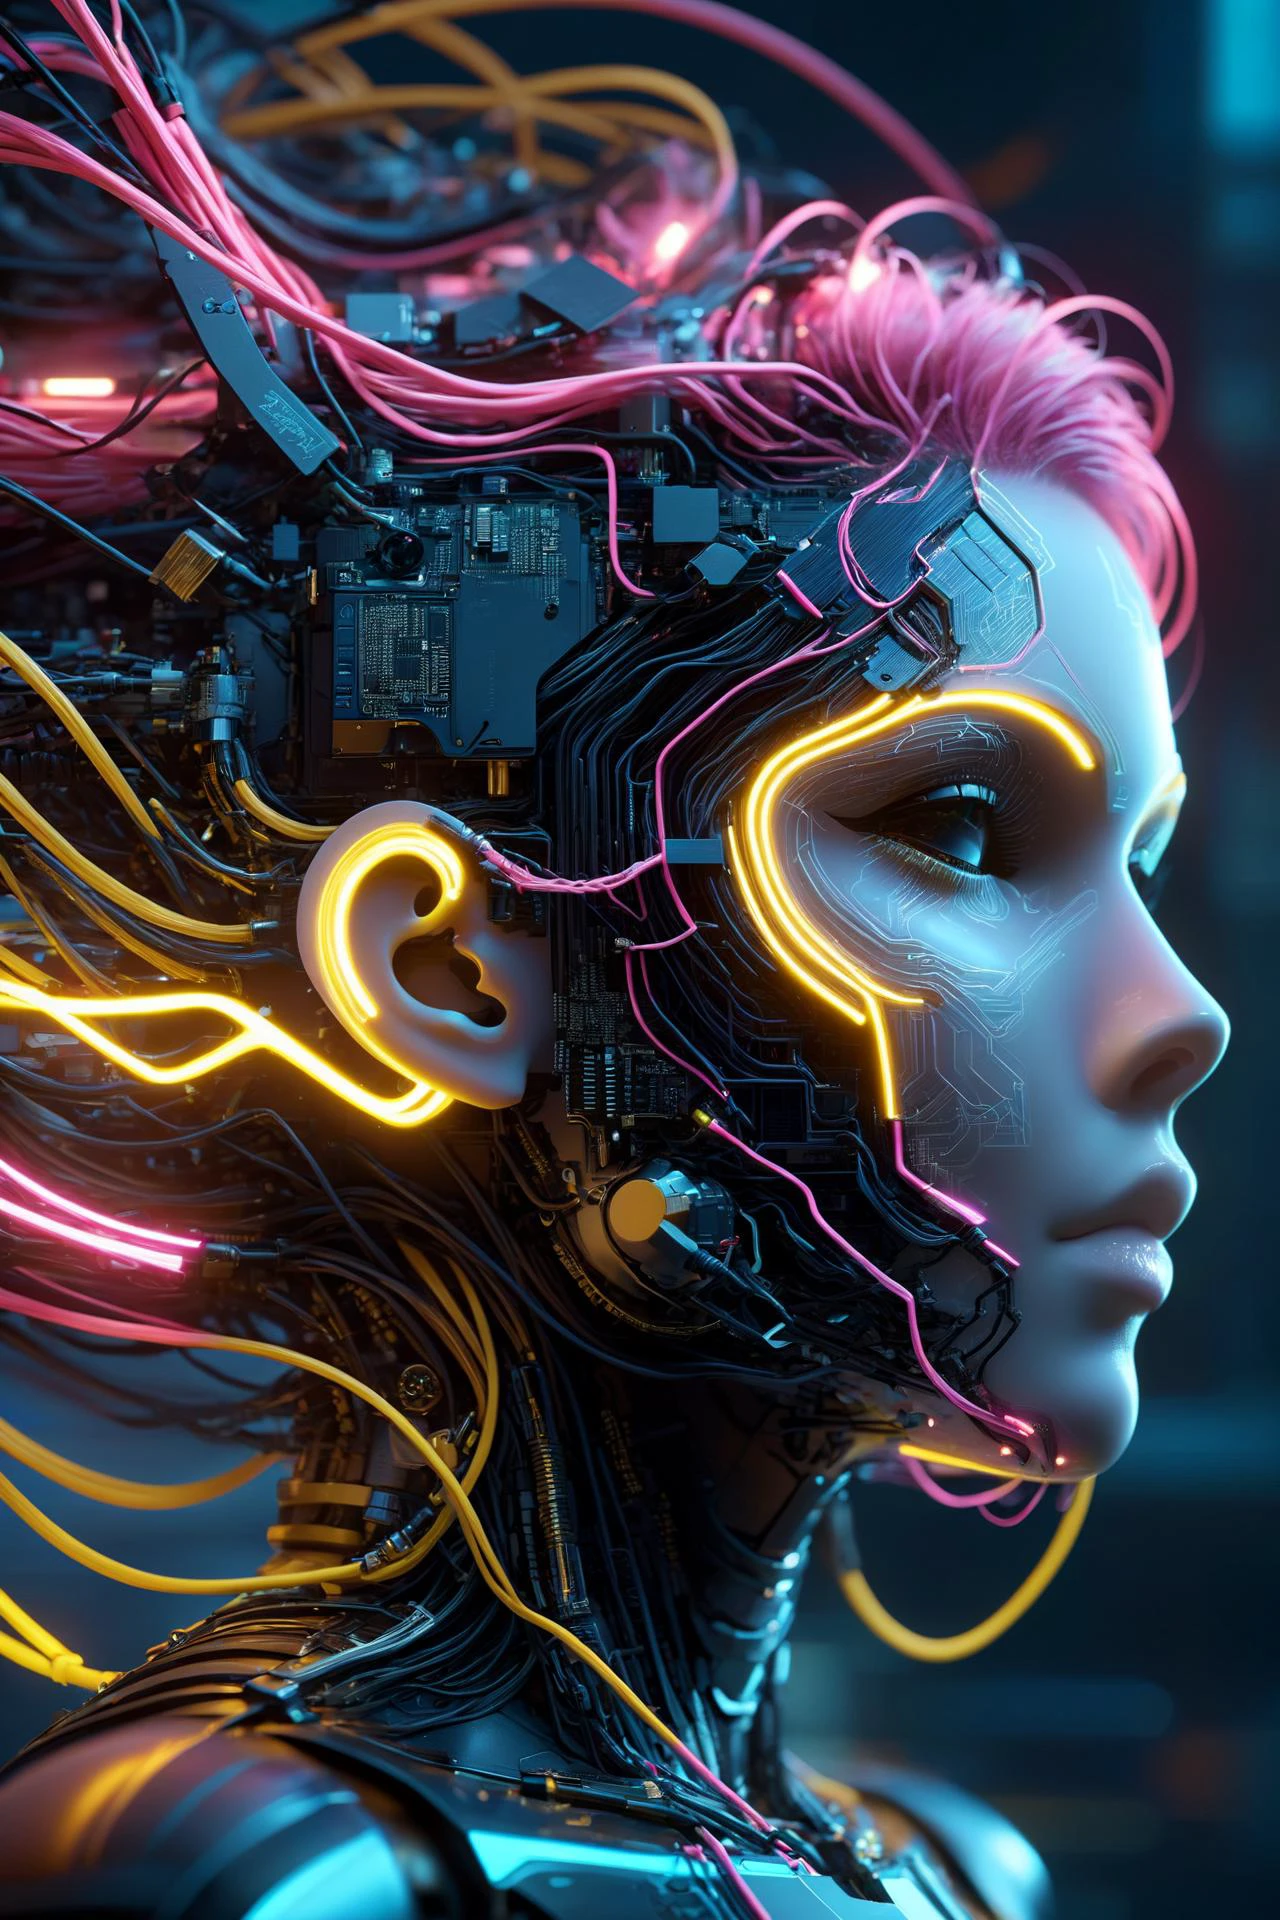 女機器人的頭, 拉爾夫‧麥誇裡, 作者：亞倫‧霍基, 霓虹黃色閃電, 霓虹青色閃電, 霓虹洋紅色閃電, 電纜, 電線, 合成波, 蒸氣波, 復古未來主義, 電路板, 黑暗未來派, 唐MW15pXL, 漂浮的, 星界拉鍊寫實主義, (傑作:1.2), 最好的品質, (超詳細的, 最詳細的:1.2), 高解析度紋理, 